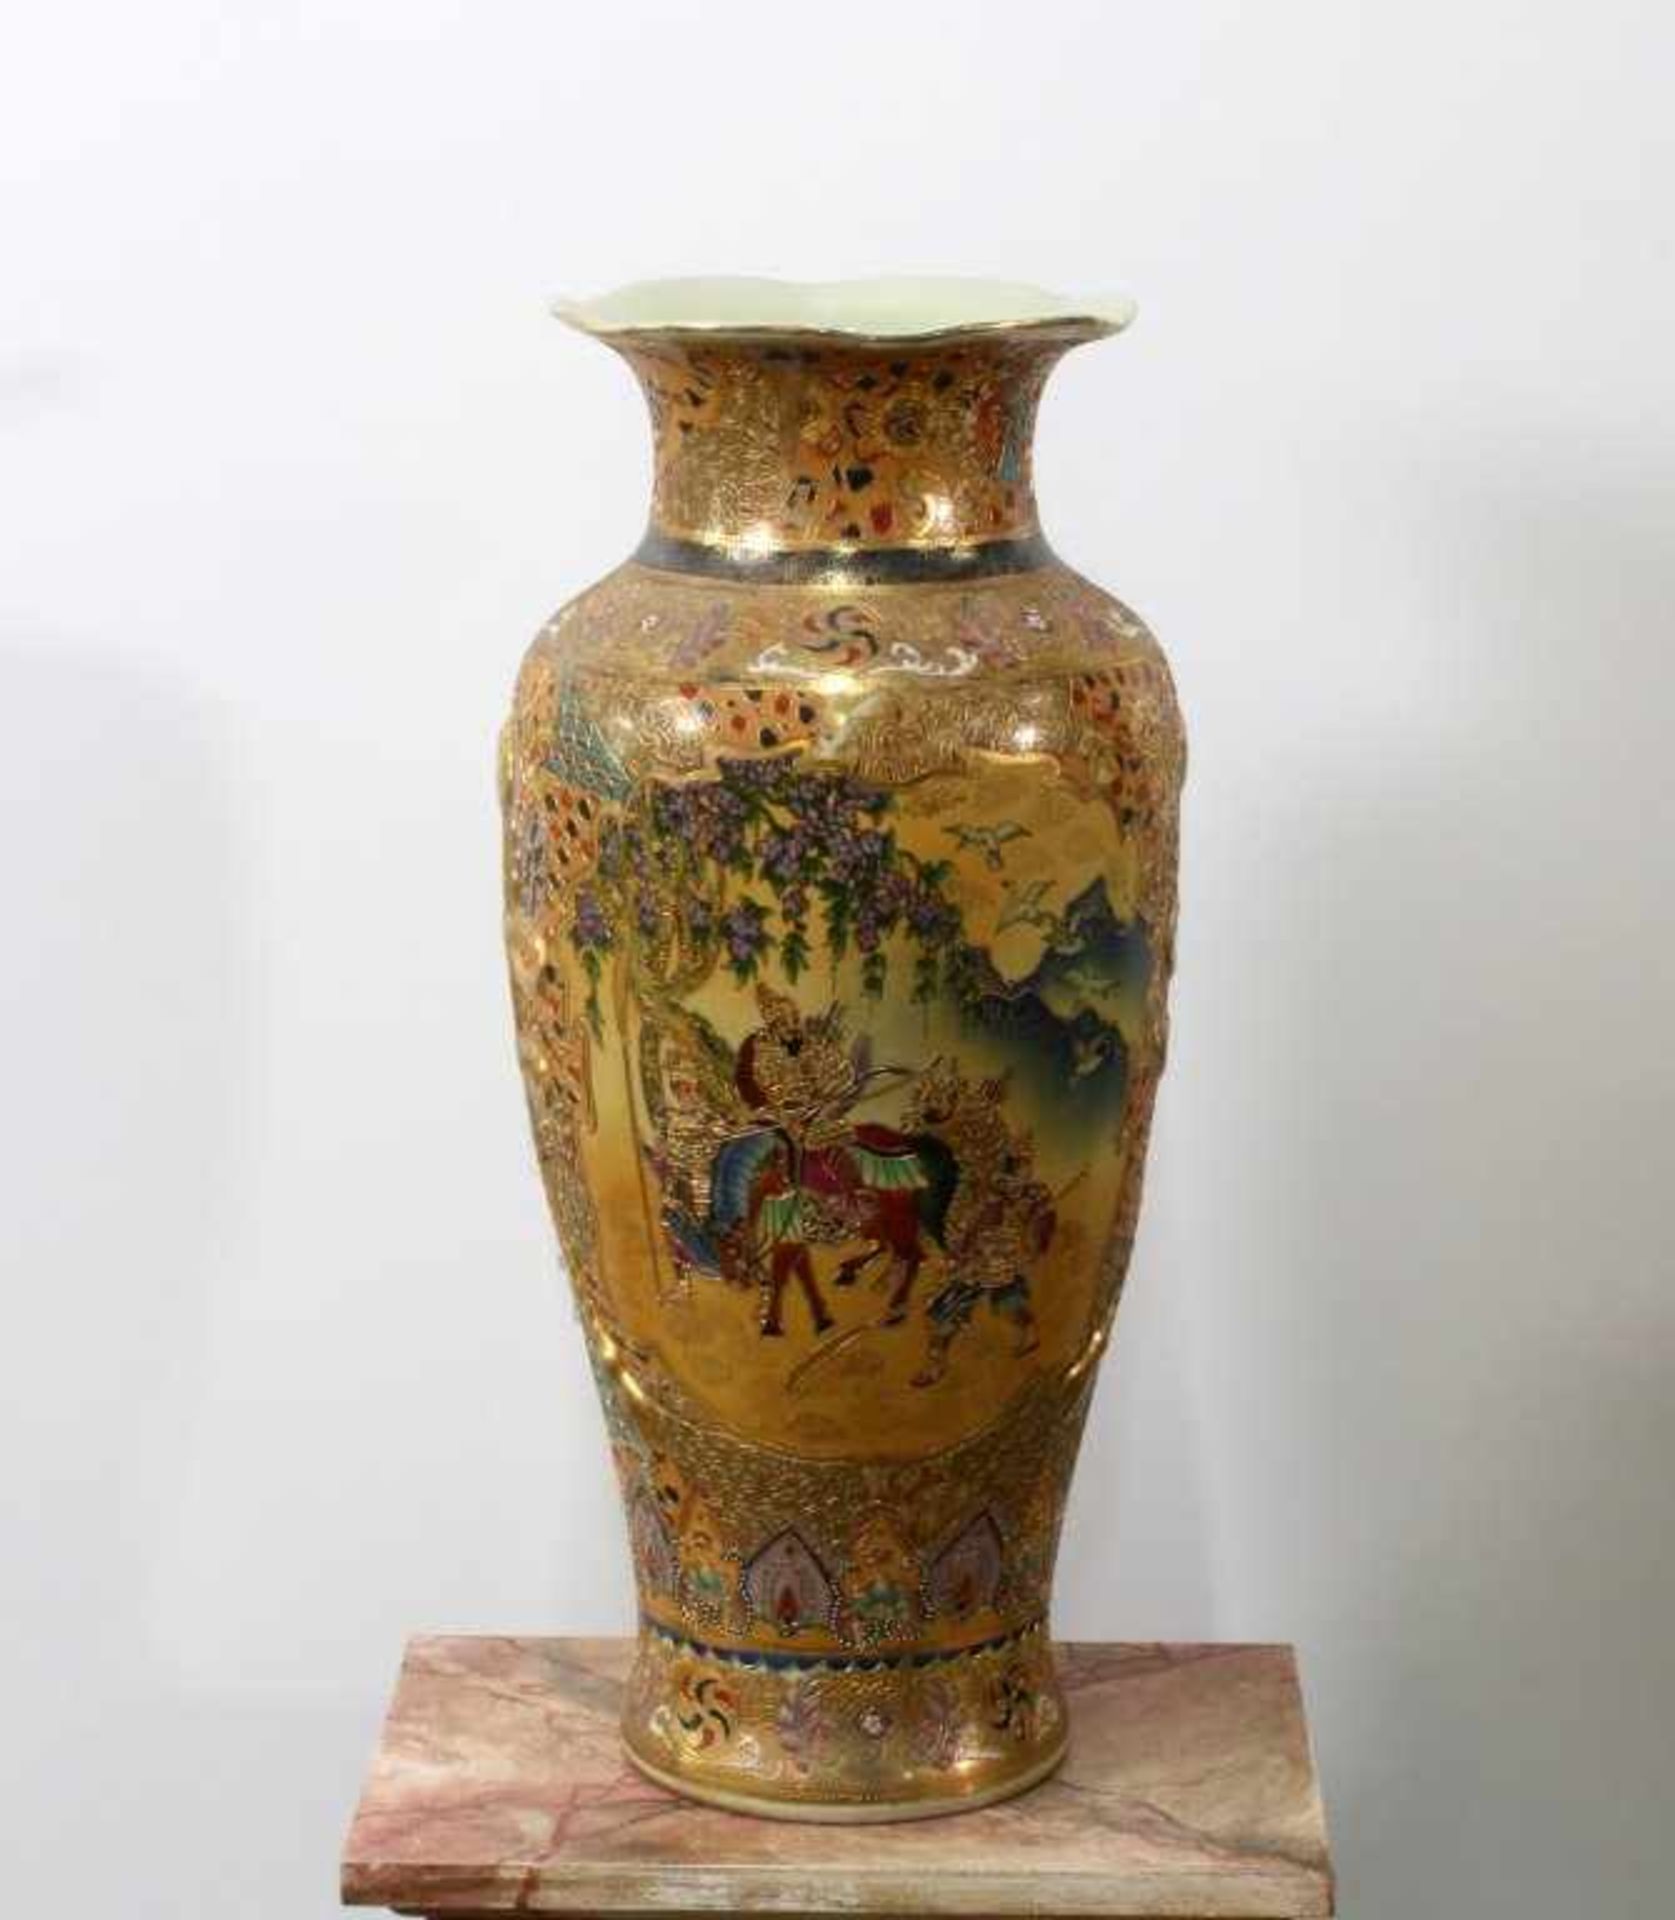 Satsuma Vase China Bauchige Form, beidseitig Gemäldekartuschen mit Figurenstaffagen in asiatischer